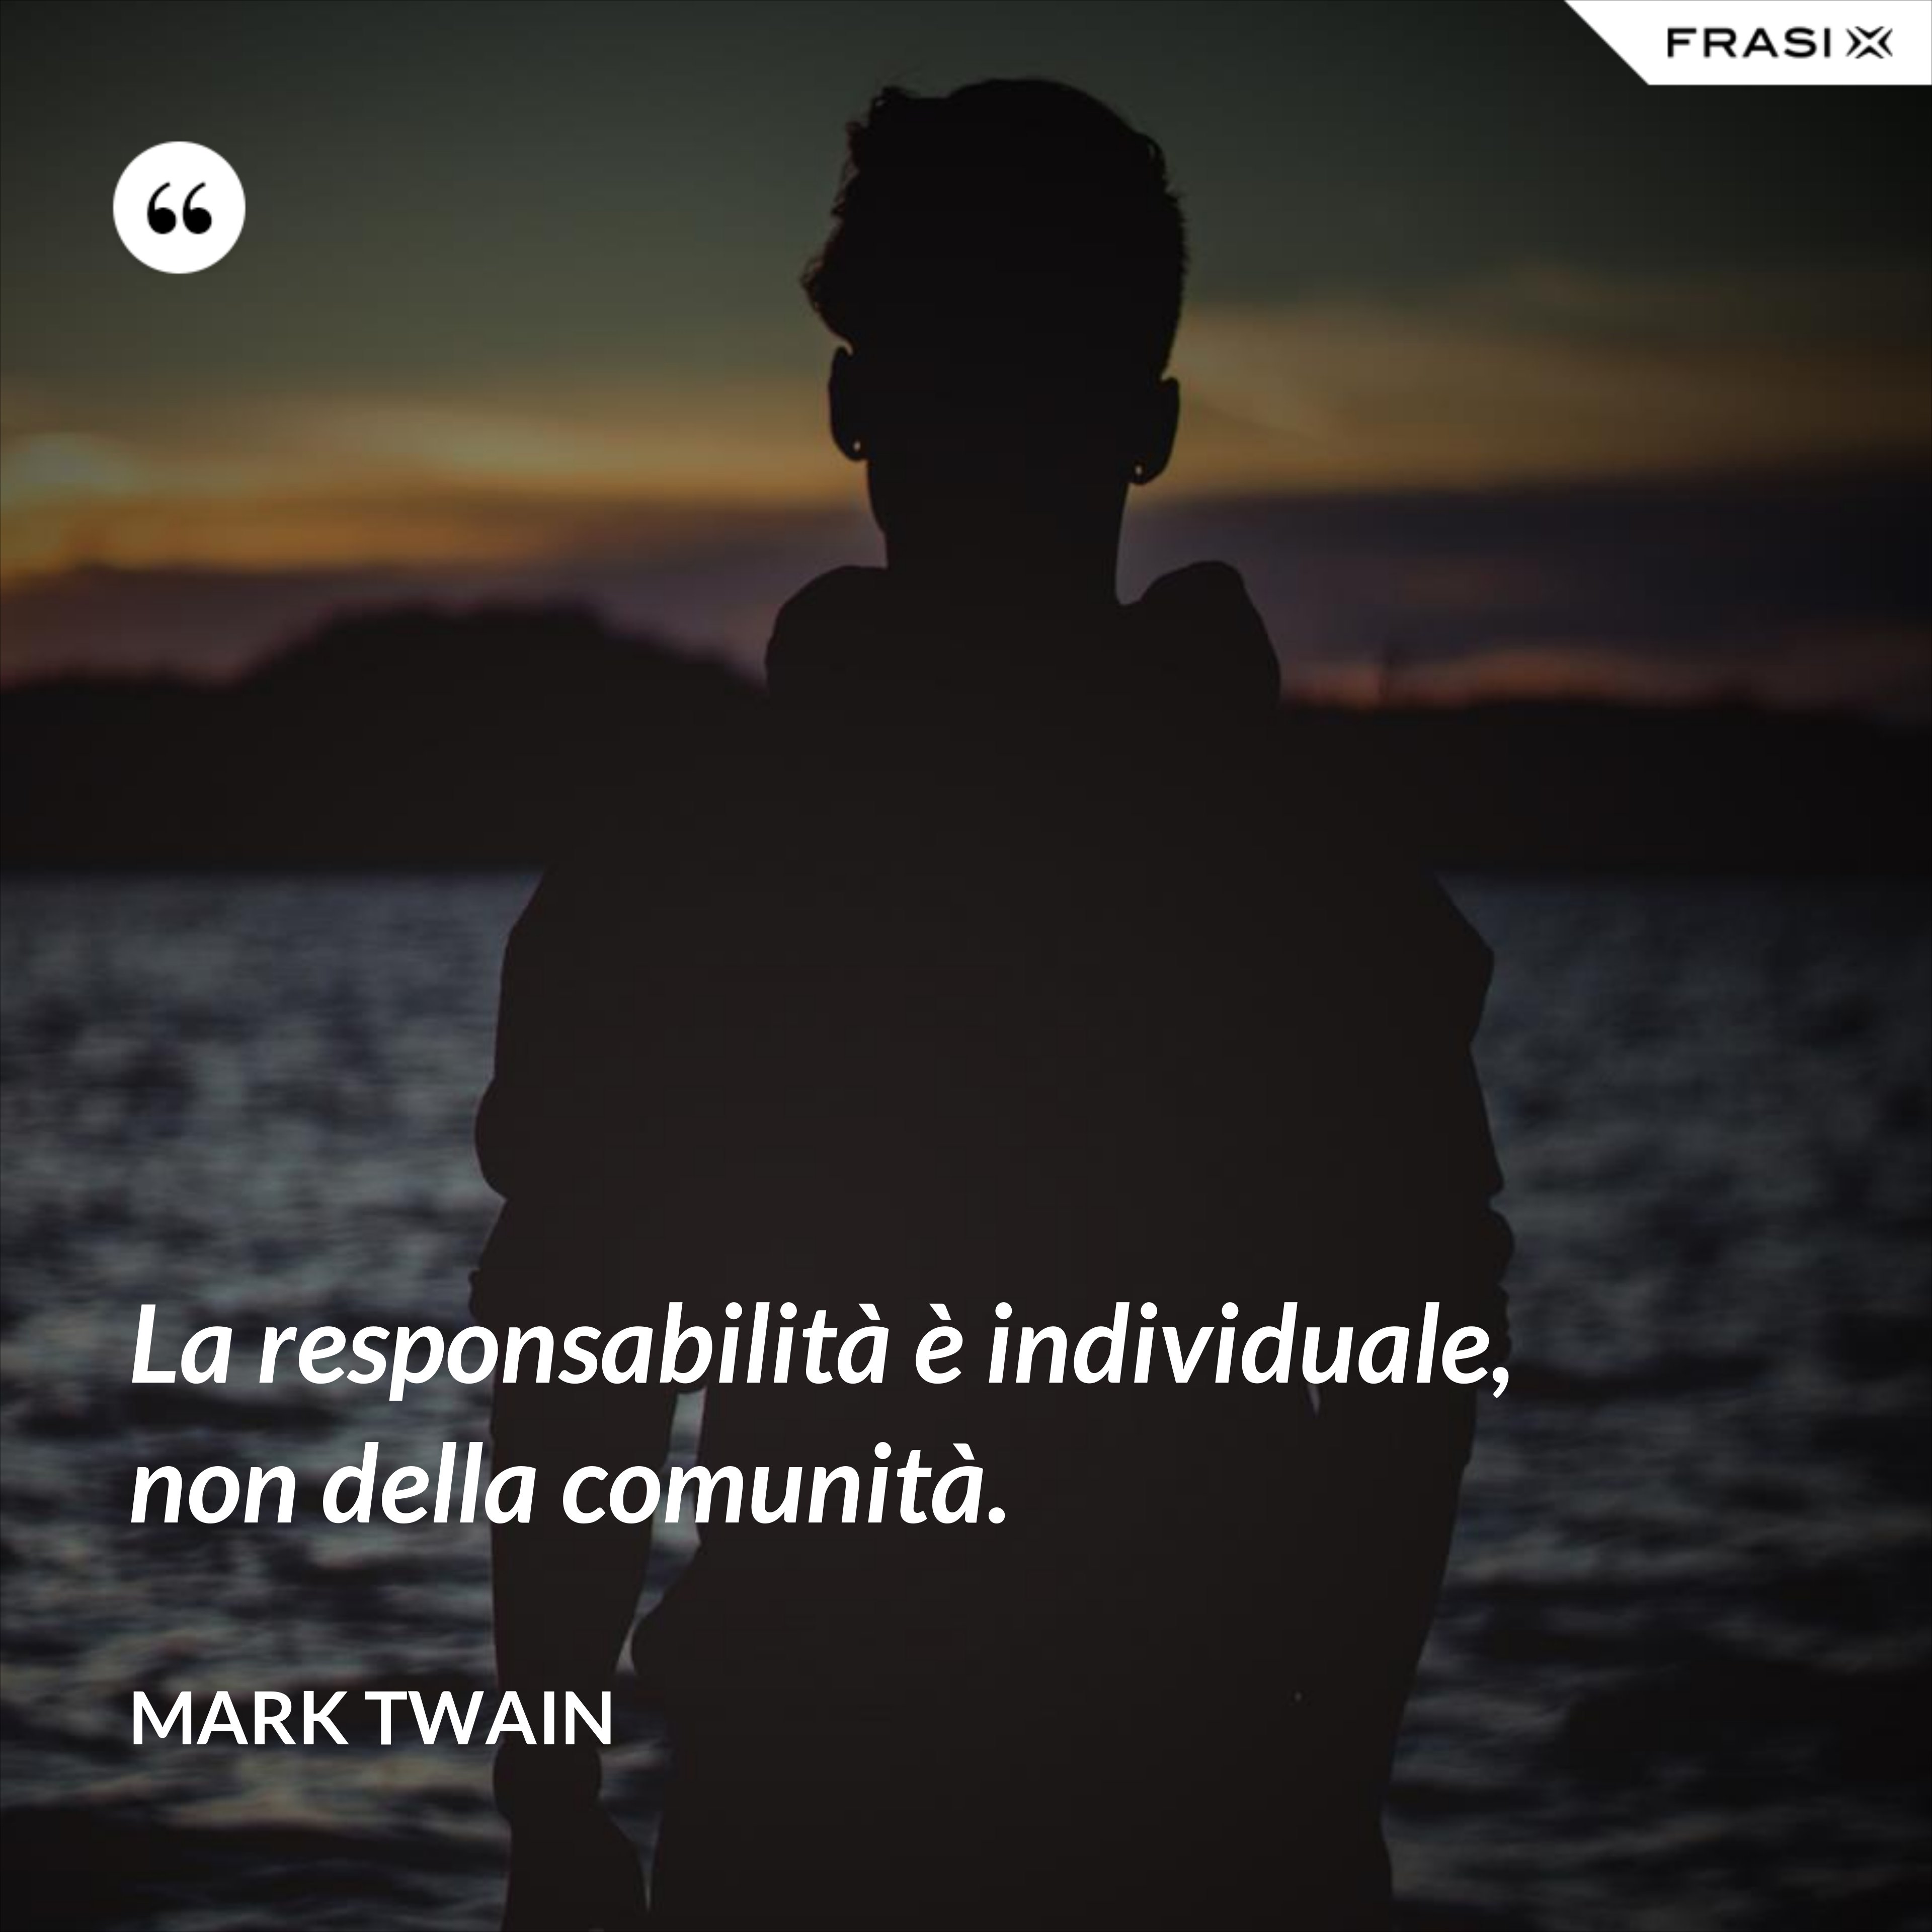 La responsabilità è individuale, non della comunità. - Mark Twain